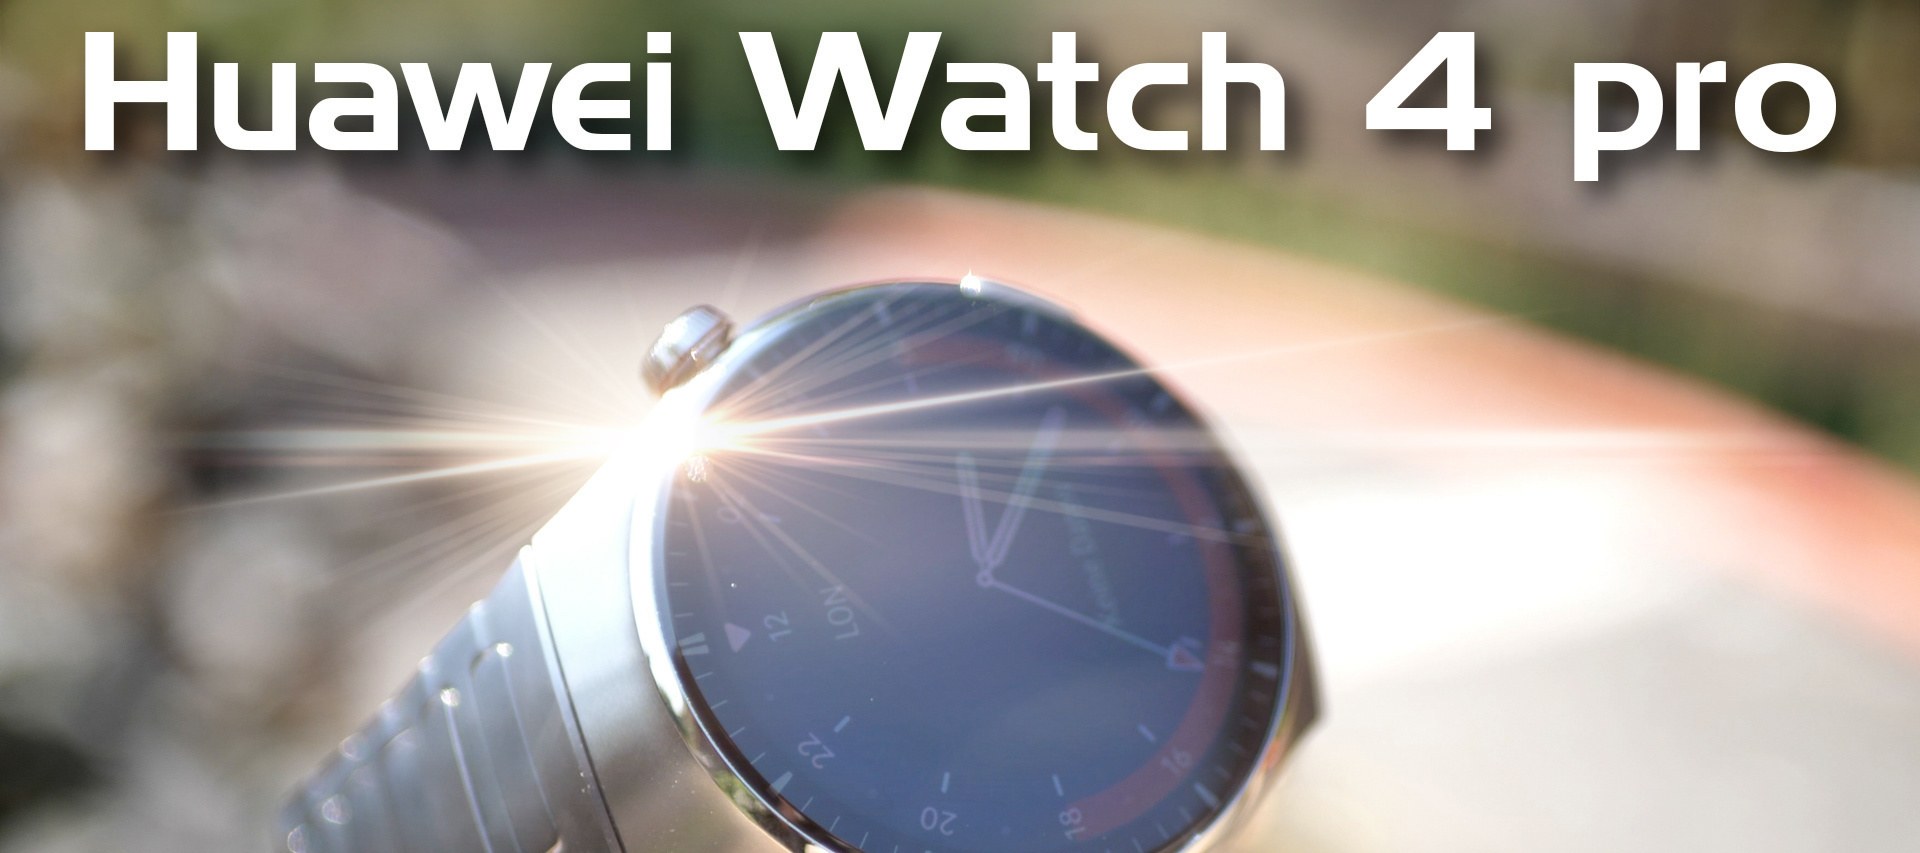 Huawei Watch 4 pro - mein erster Eindruck der SmartWatch